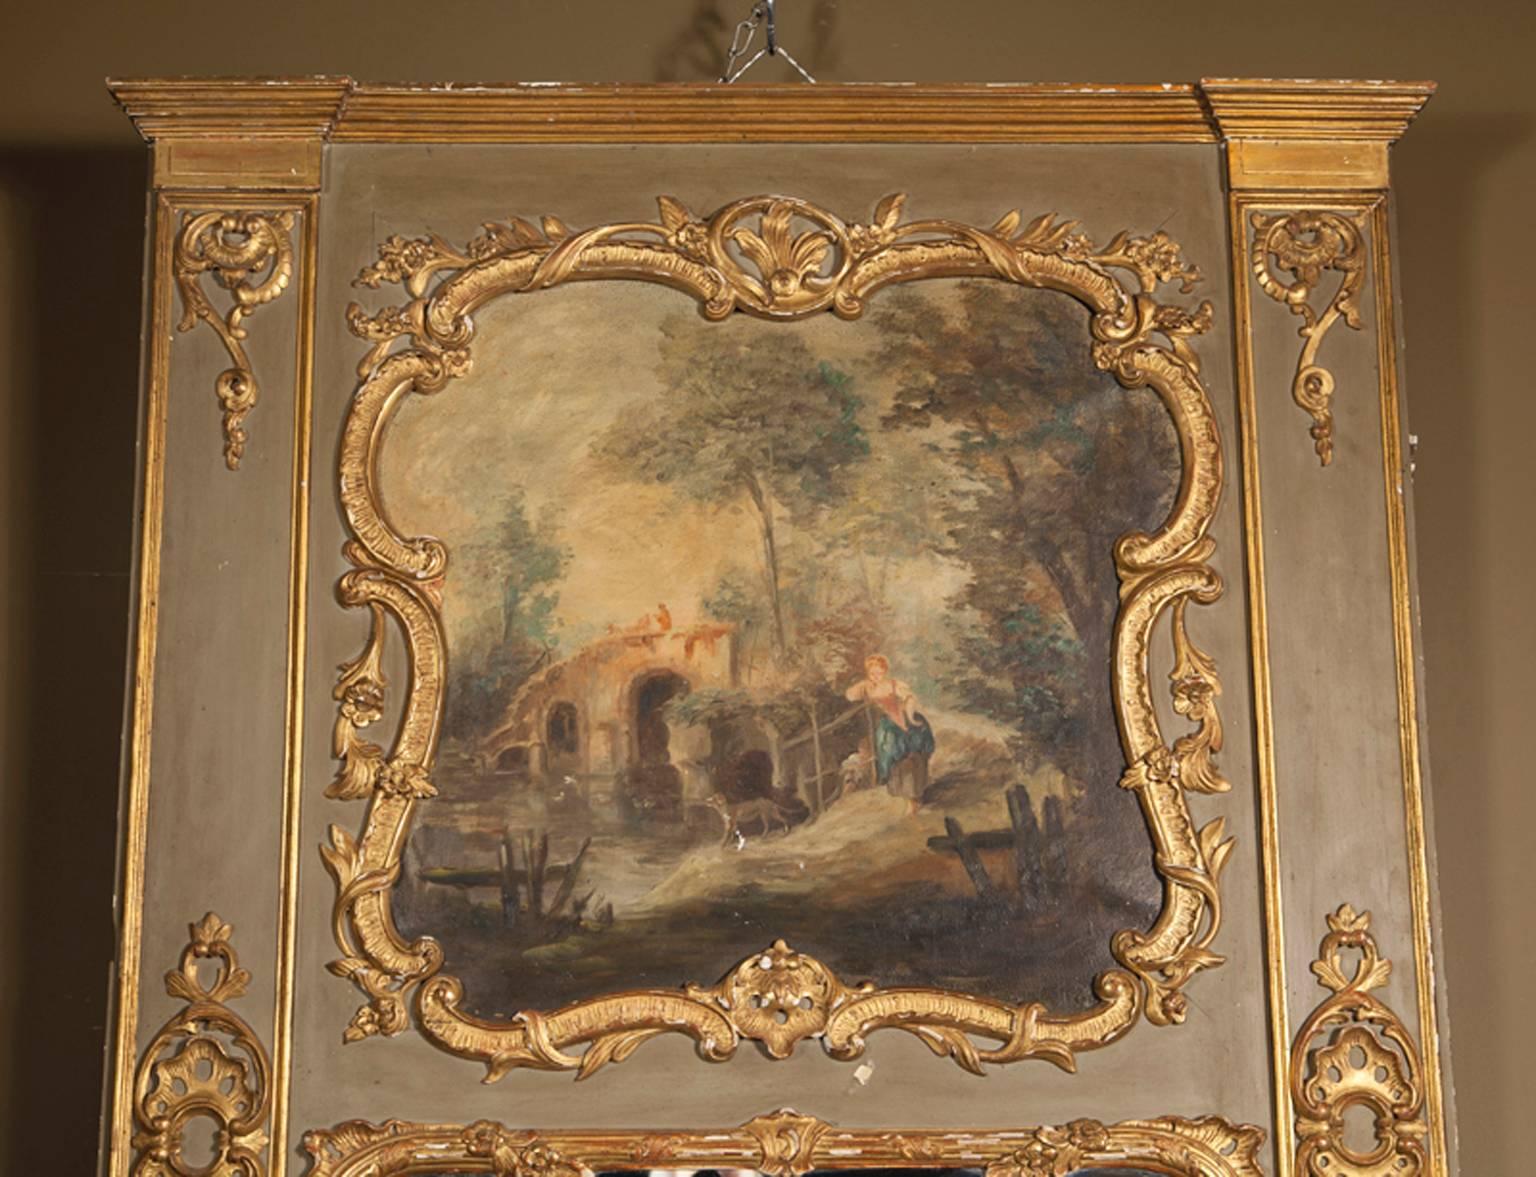 Ce trumeau ancien, sculpté à la manière de Louis XVI, est peint à l'huile avec une scène de la vie pastorale française dans le tiers supérieur, au-dessus du miroir. Une paysanne française aux pieds nus s'appuie sur une clôture de poteaux de bois